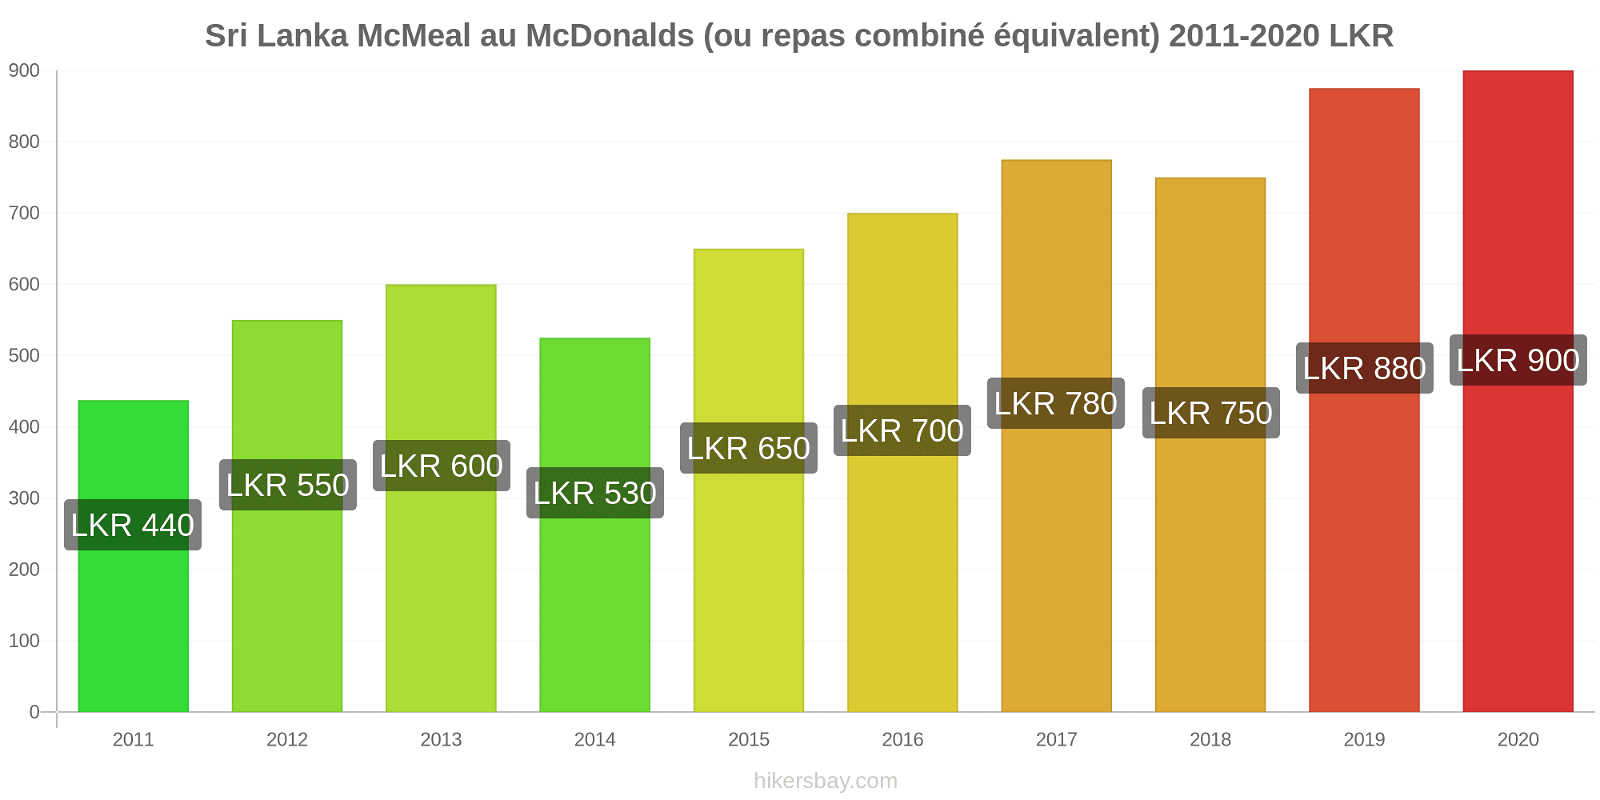 Sri Lanka changements de prix McMeal à McDonald ' s (ou Combo équivalent tourteau) hikersbay.com